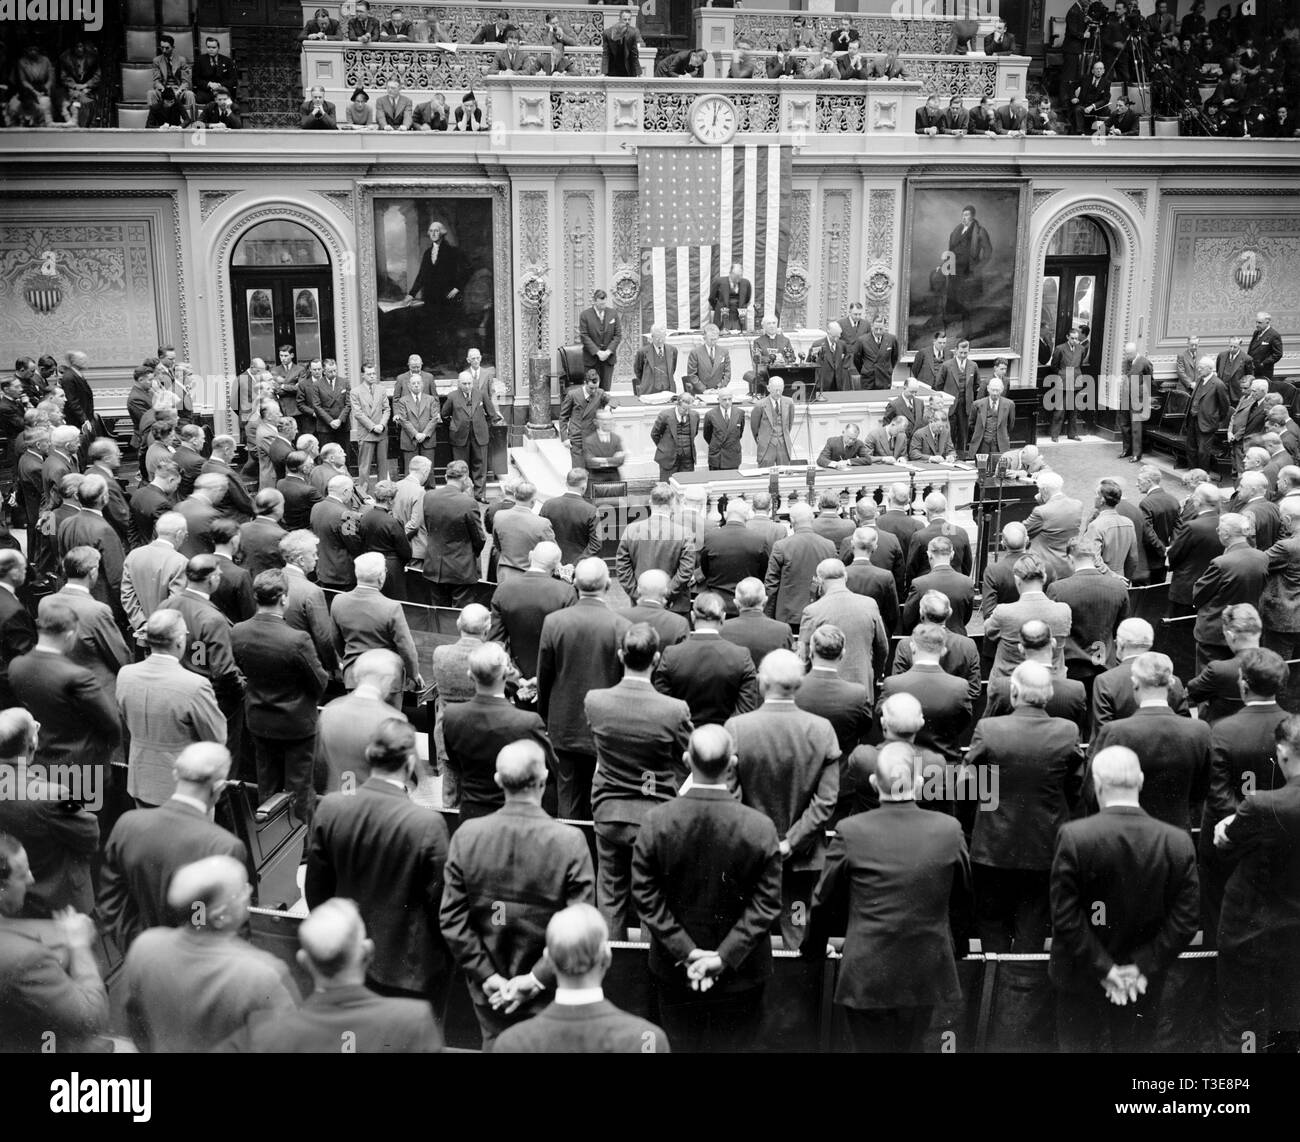 Scène dans la chambre Chambre aujourd'hui que le révérend James Shera Montgomery, aumônier de la Chambre, a prononcé la prière pour ouvrir la session extraordinaire convoquée par le président Roosevelt, 11/15/37 Banque D'Images